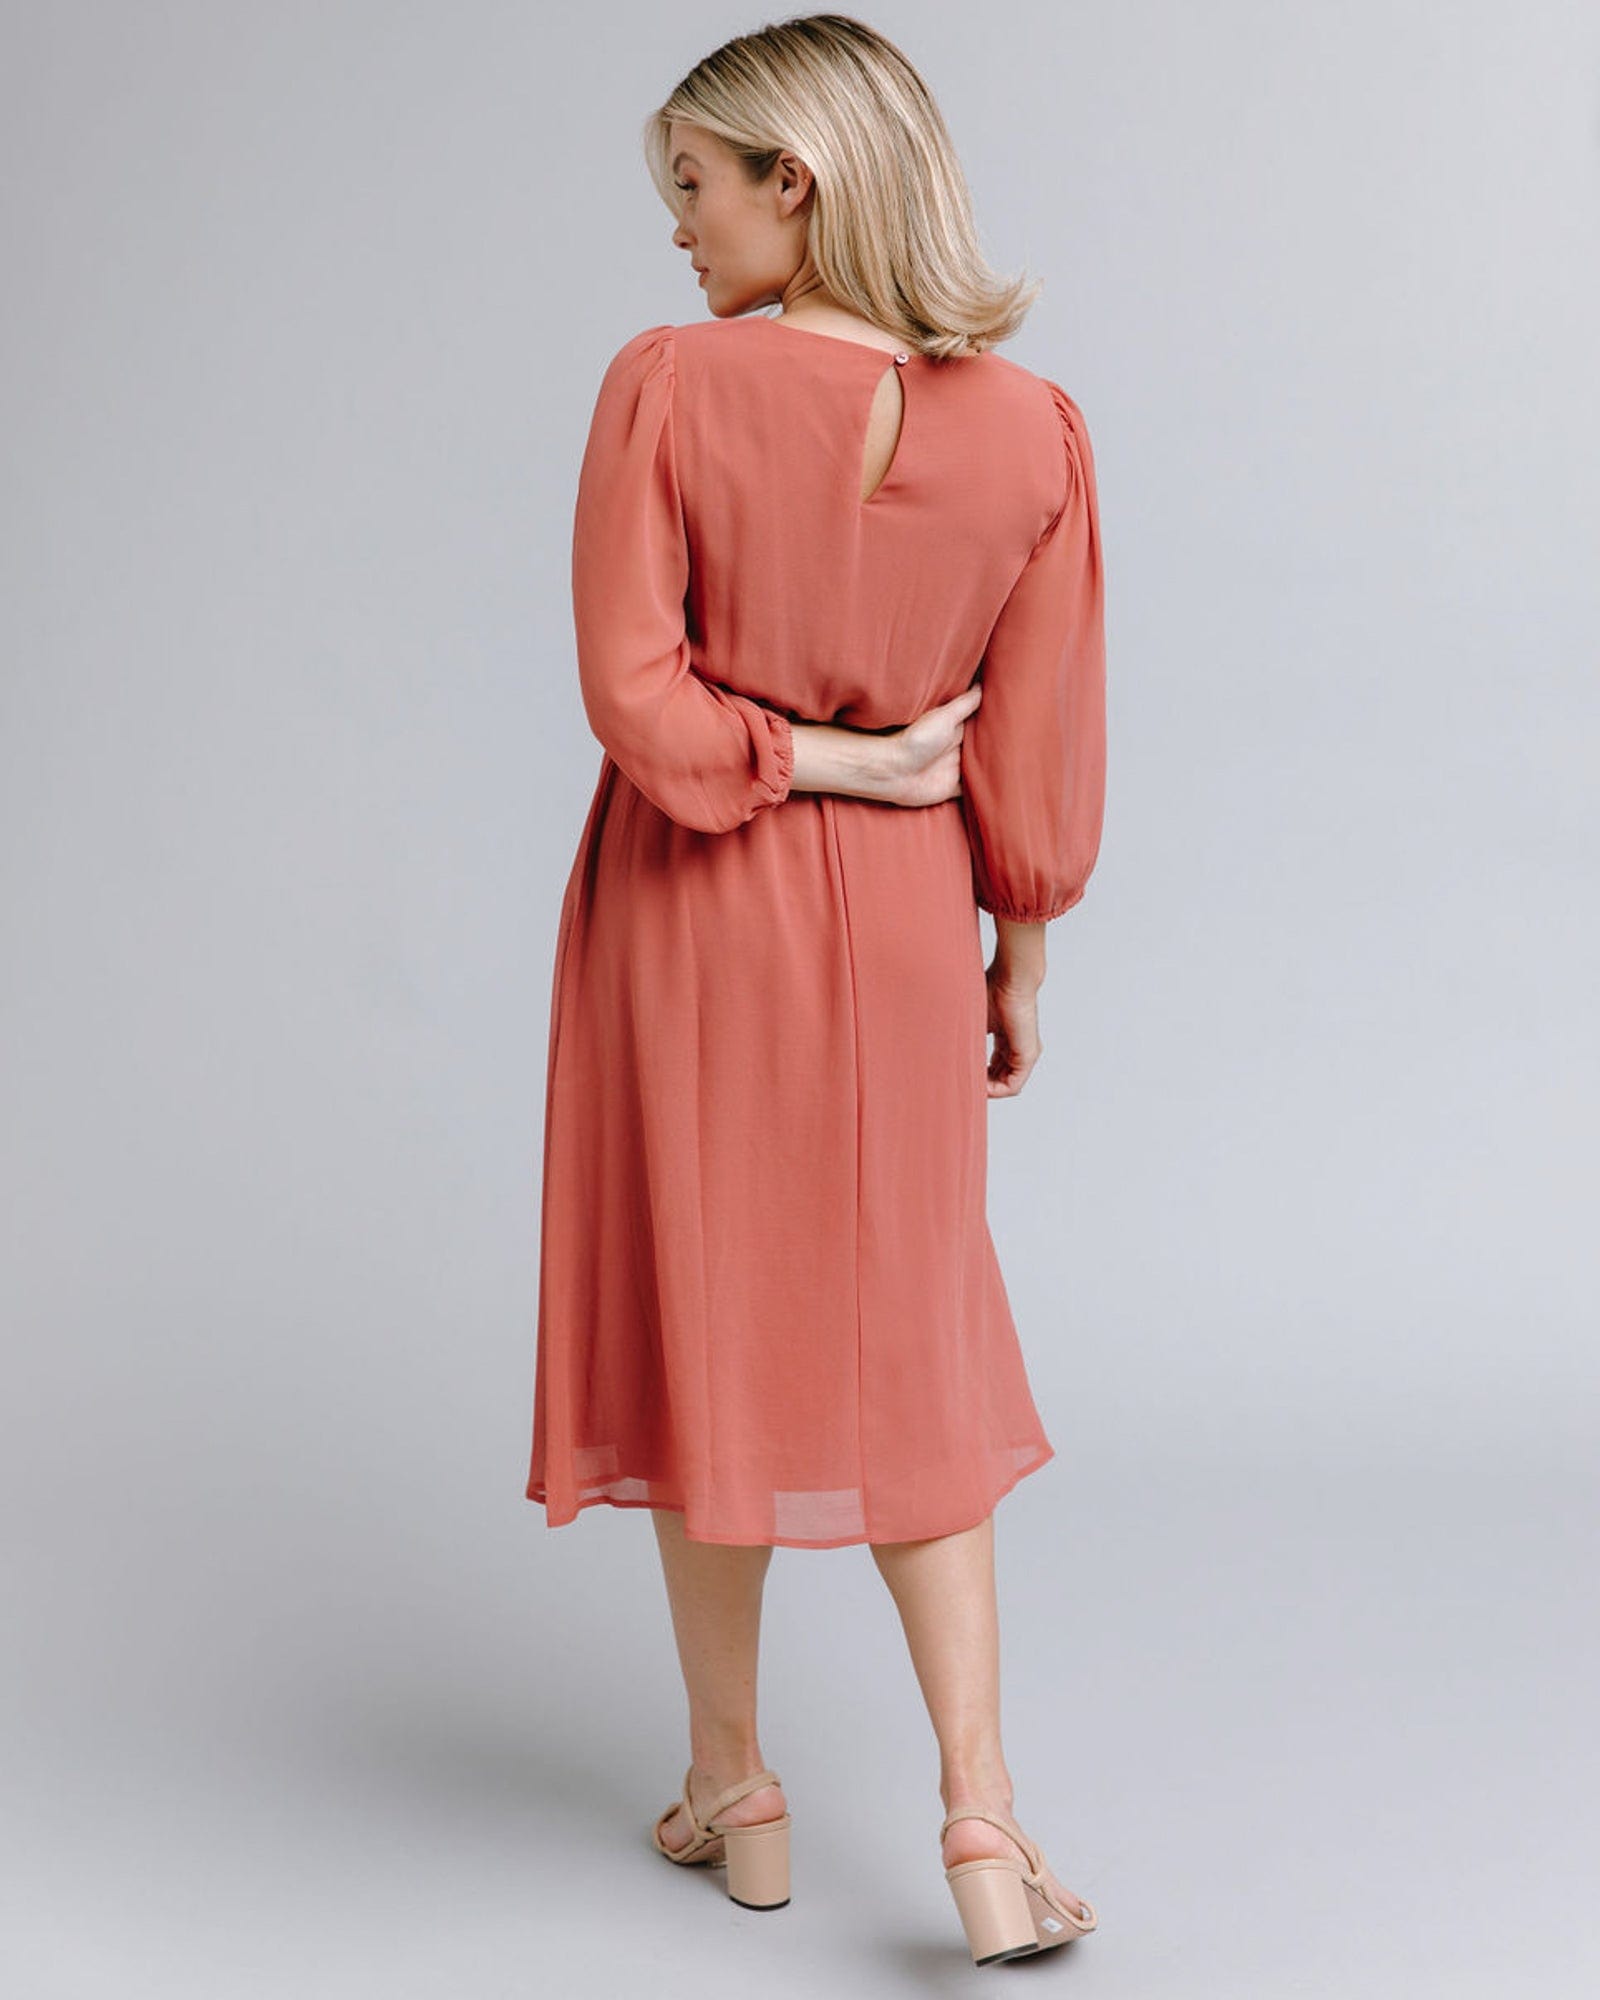 Woman in a long sleeve, knee-length, orange dress